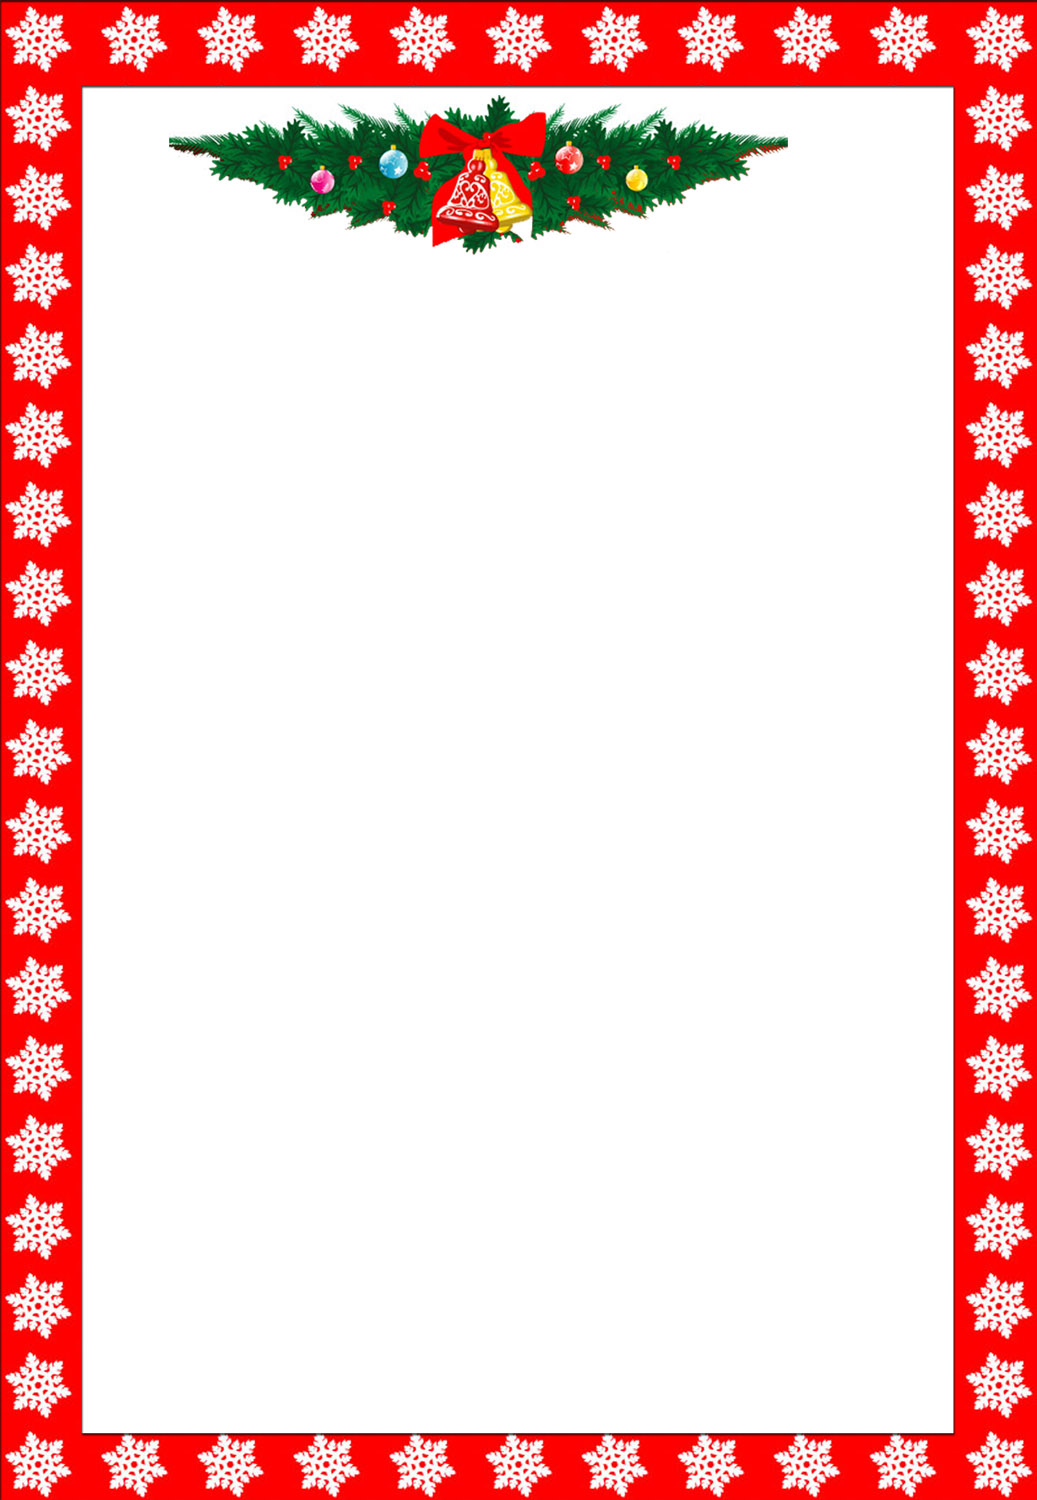 Free Printable Christmas Stationary Borders Trials Ireland - Free Printable Christmas Border Paper